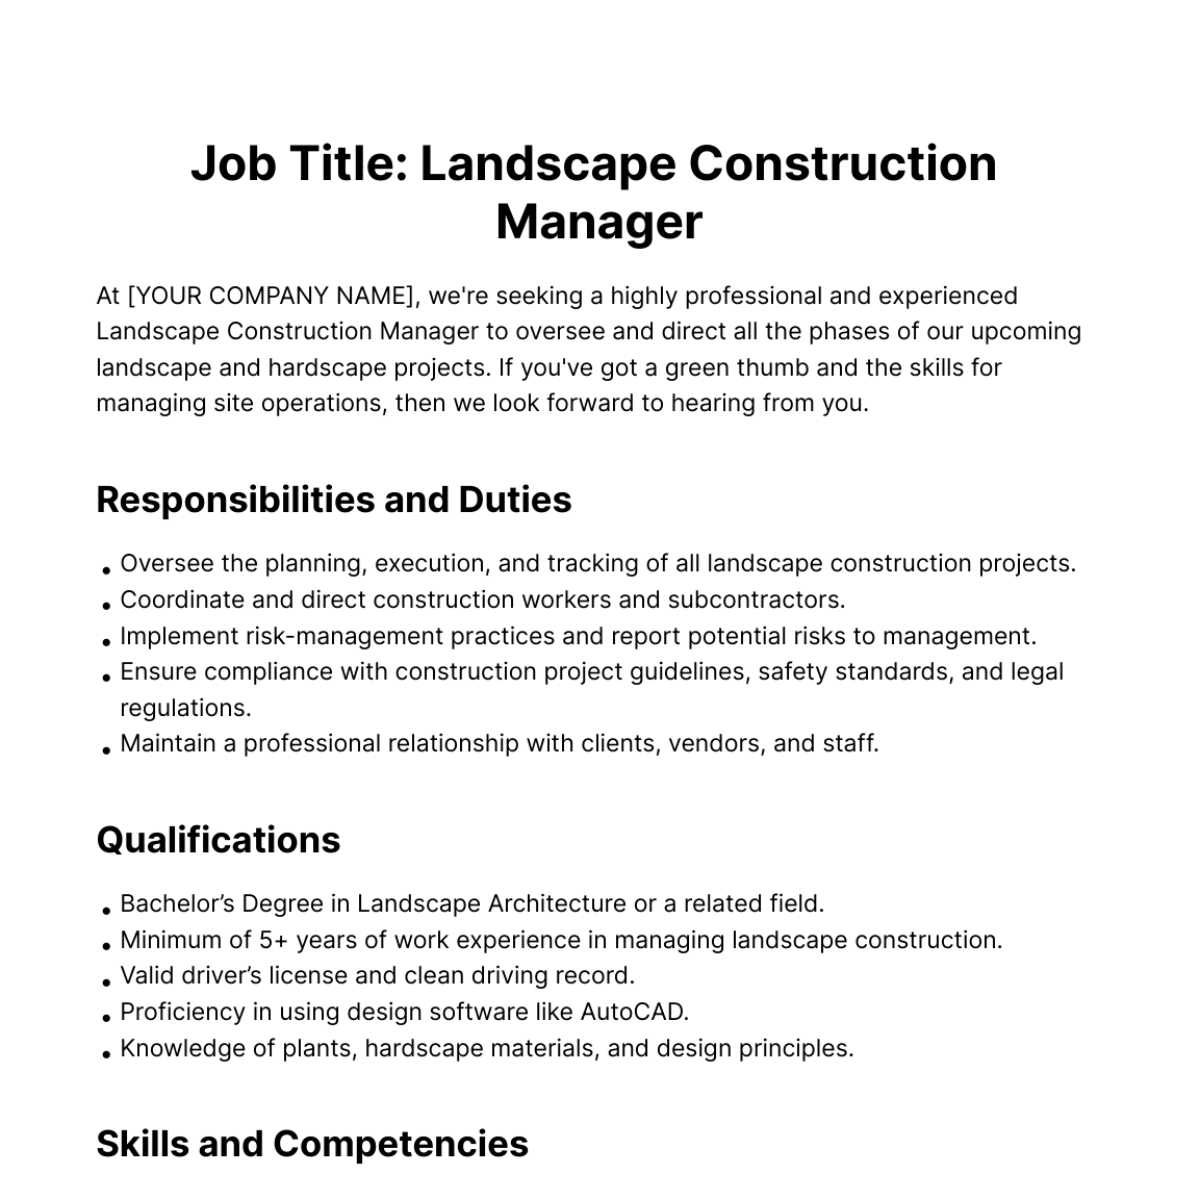 Landscape Construction Manager Job Description Template